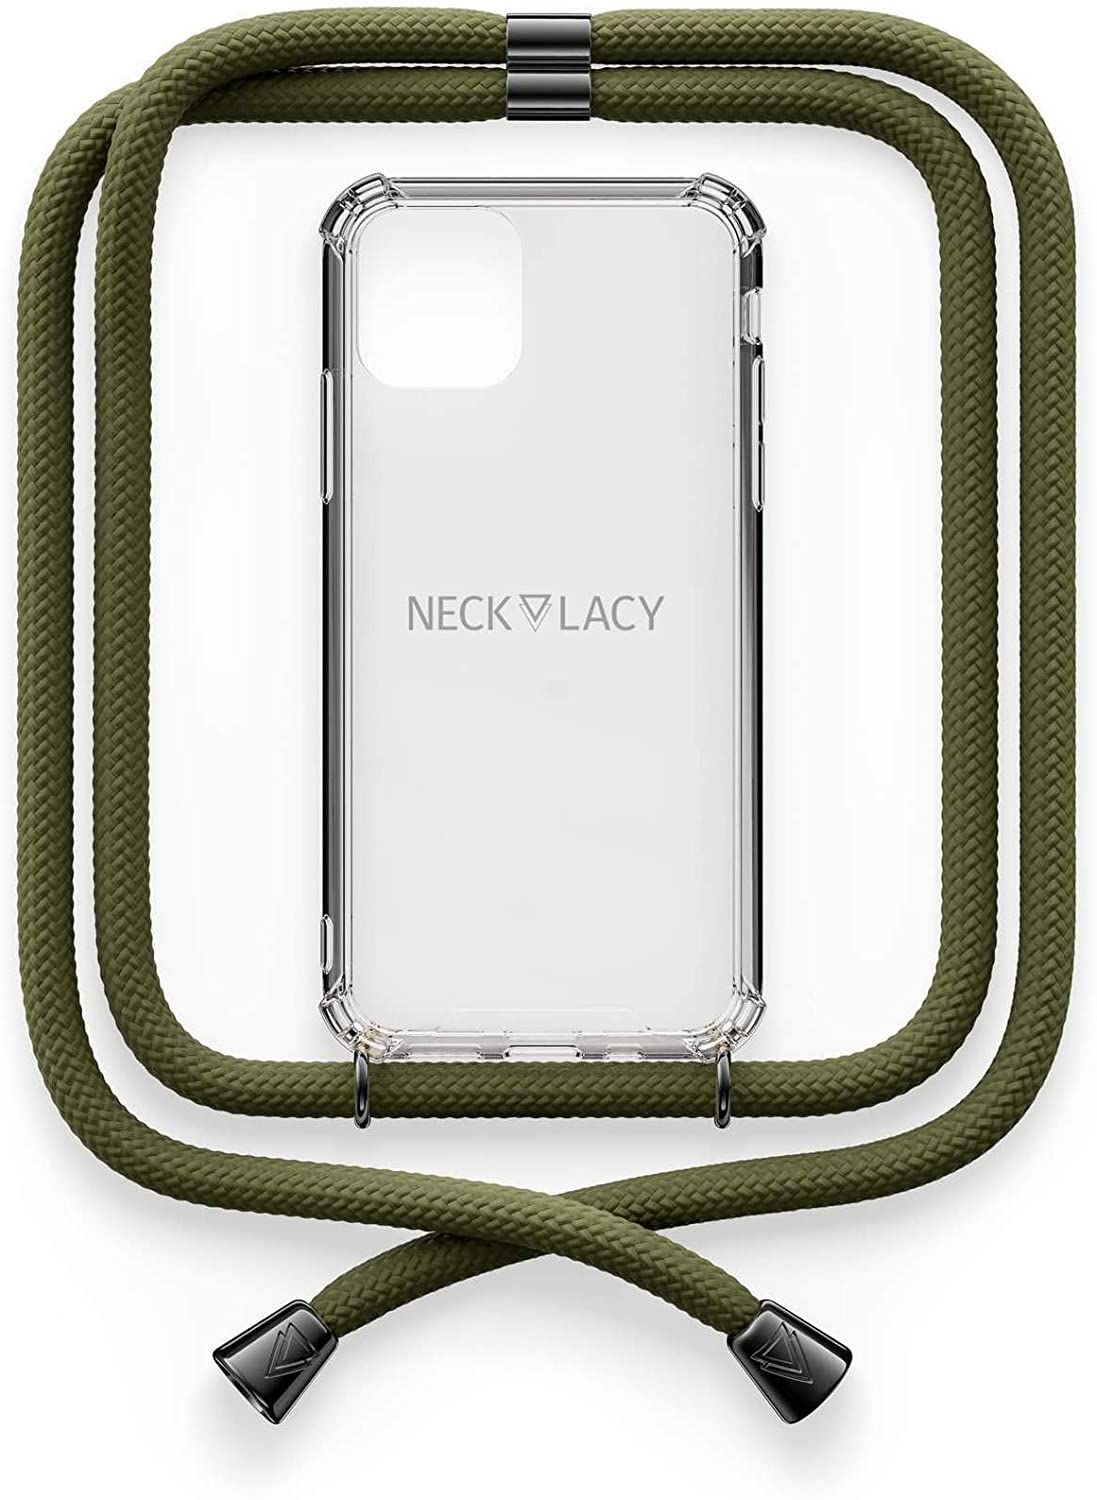 NECKLACY Handykette Handyhülle zum umhängen - für iPhone X/XS - Case / Handyhülle mit Band zum umhängen - Trageband Hals mit Kordel - Smartphone Necklace, Dark Olive Gunmetal